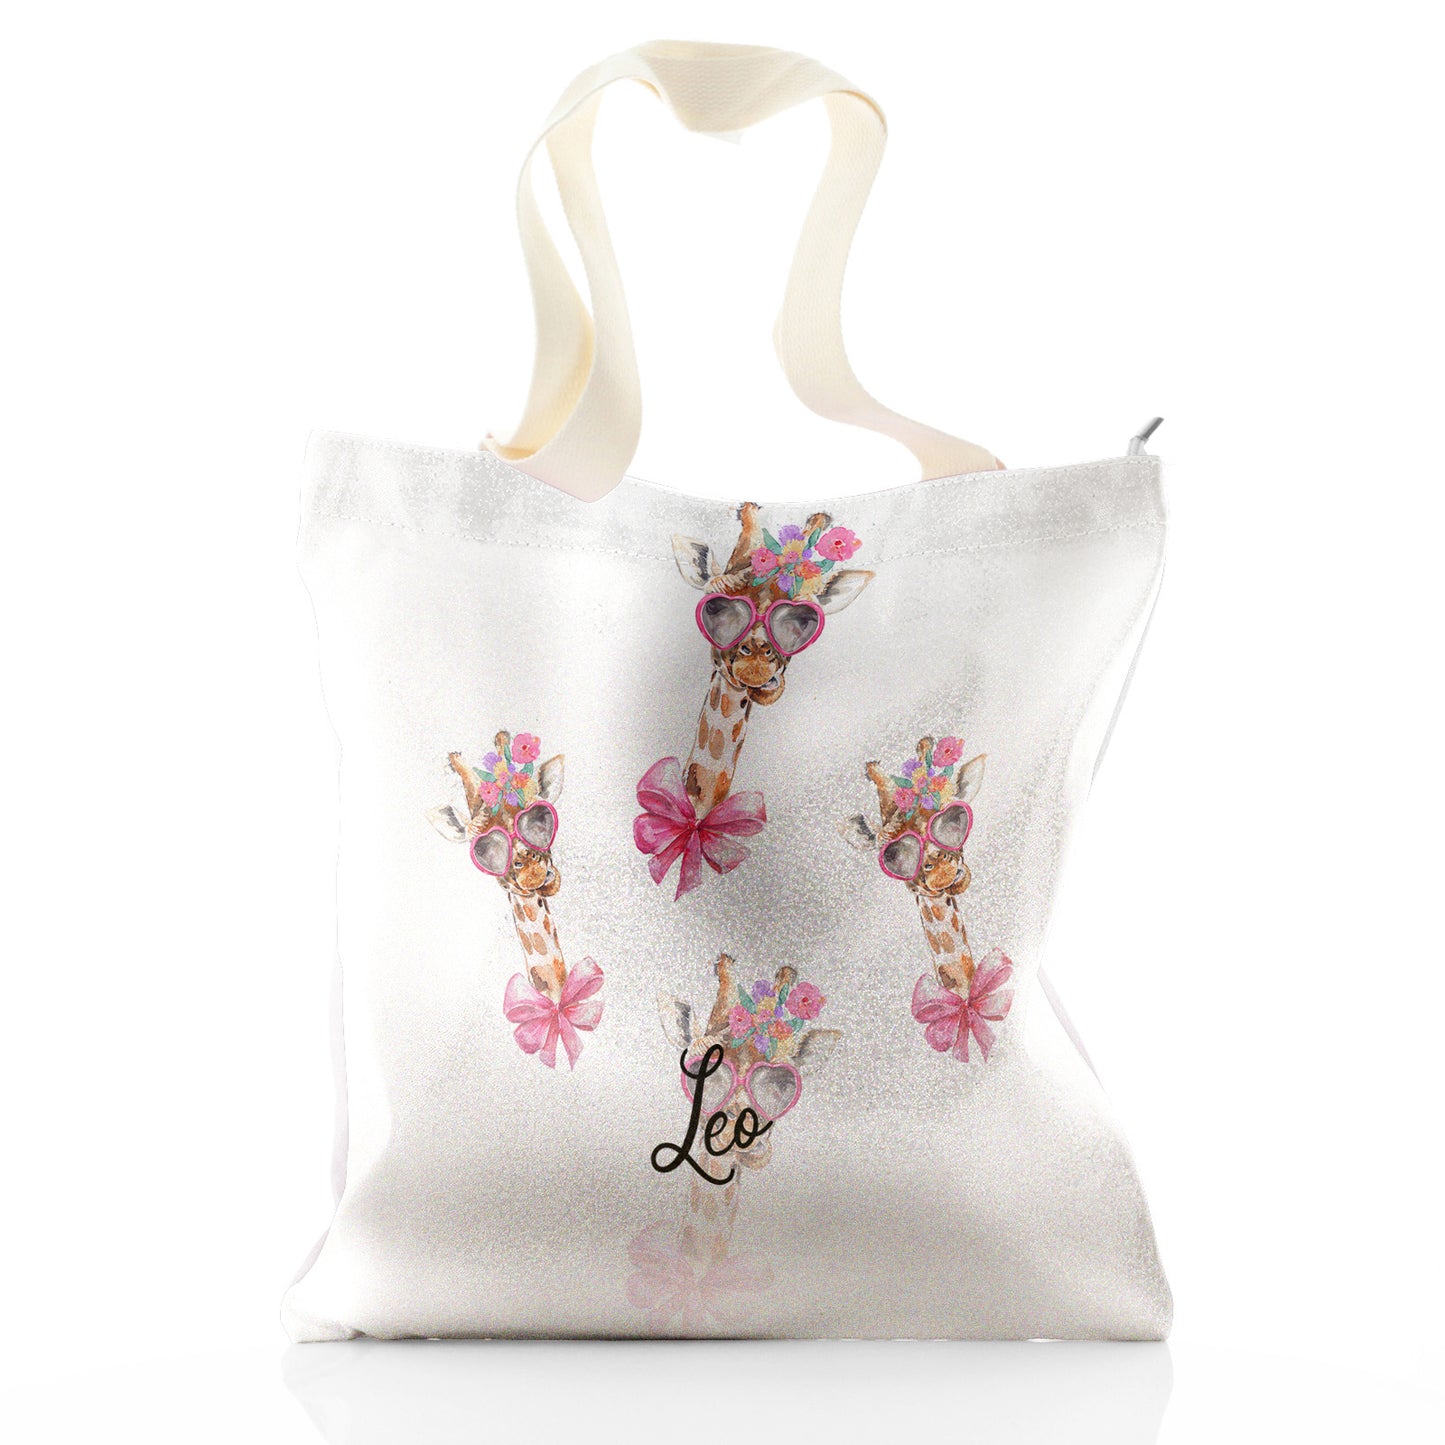 Personalisierte Glitzer-Einkaufstasche mit Giraffen-Rosa-Schleife, mehrfarbigen Blumen und niedlichem Text